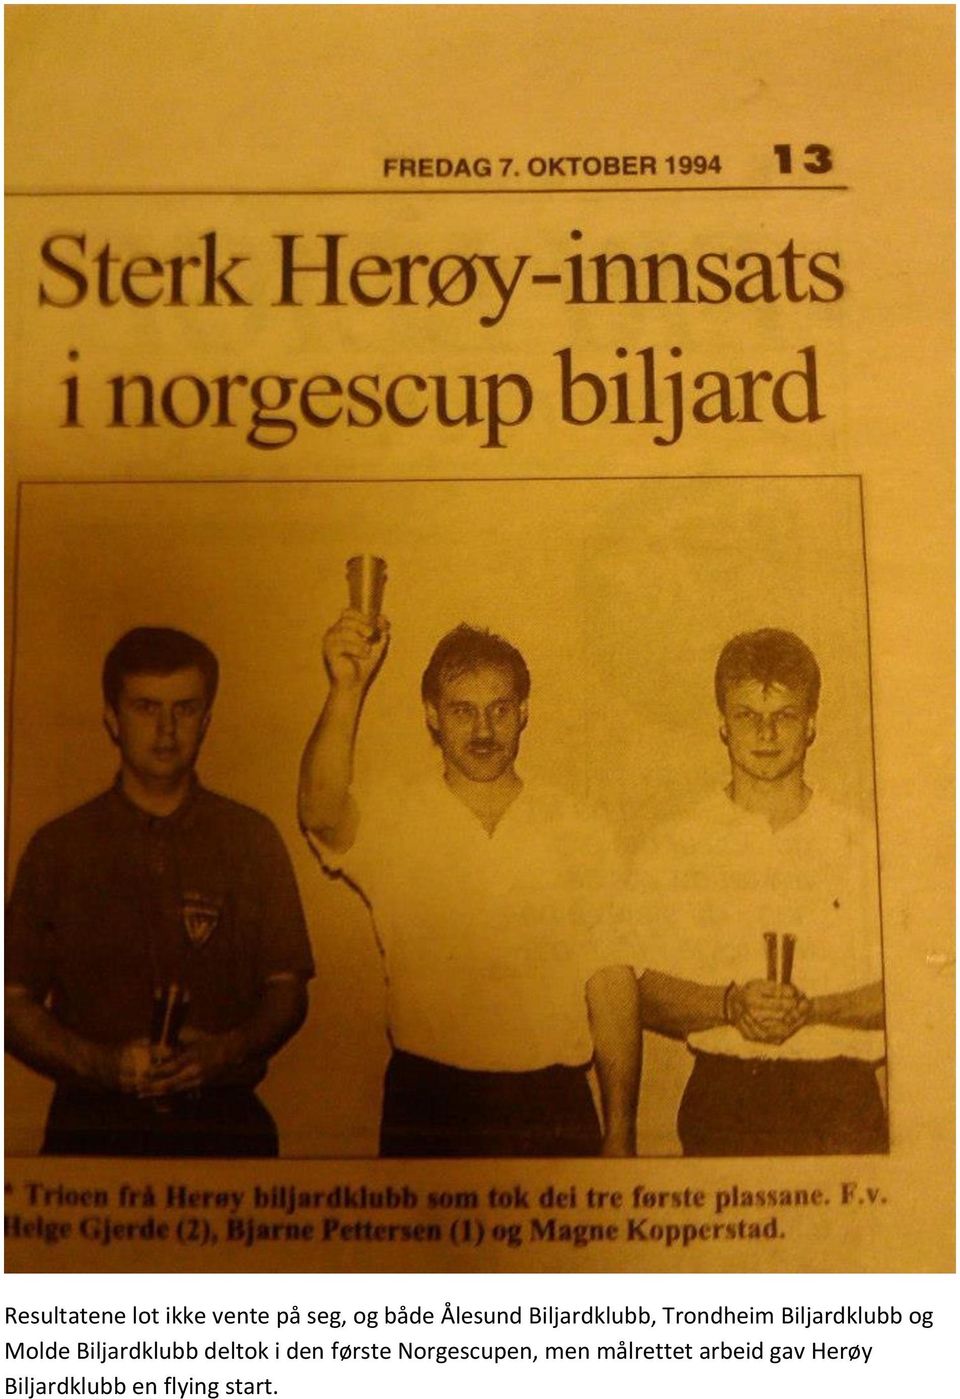 Biljardklubb deltok i den første Norgescupen, men